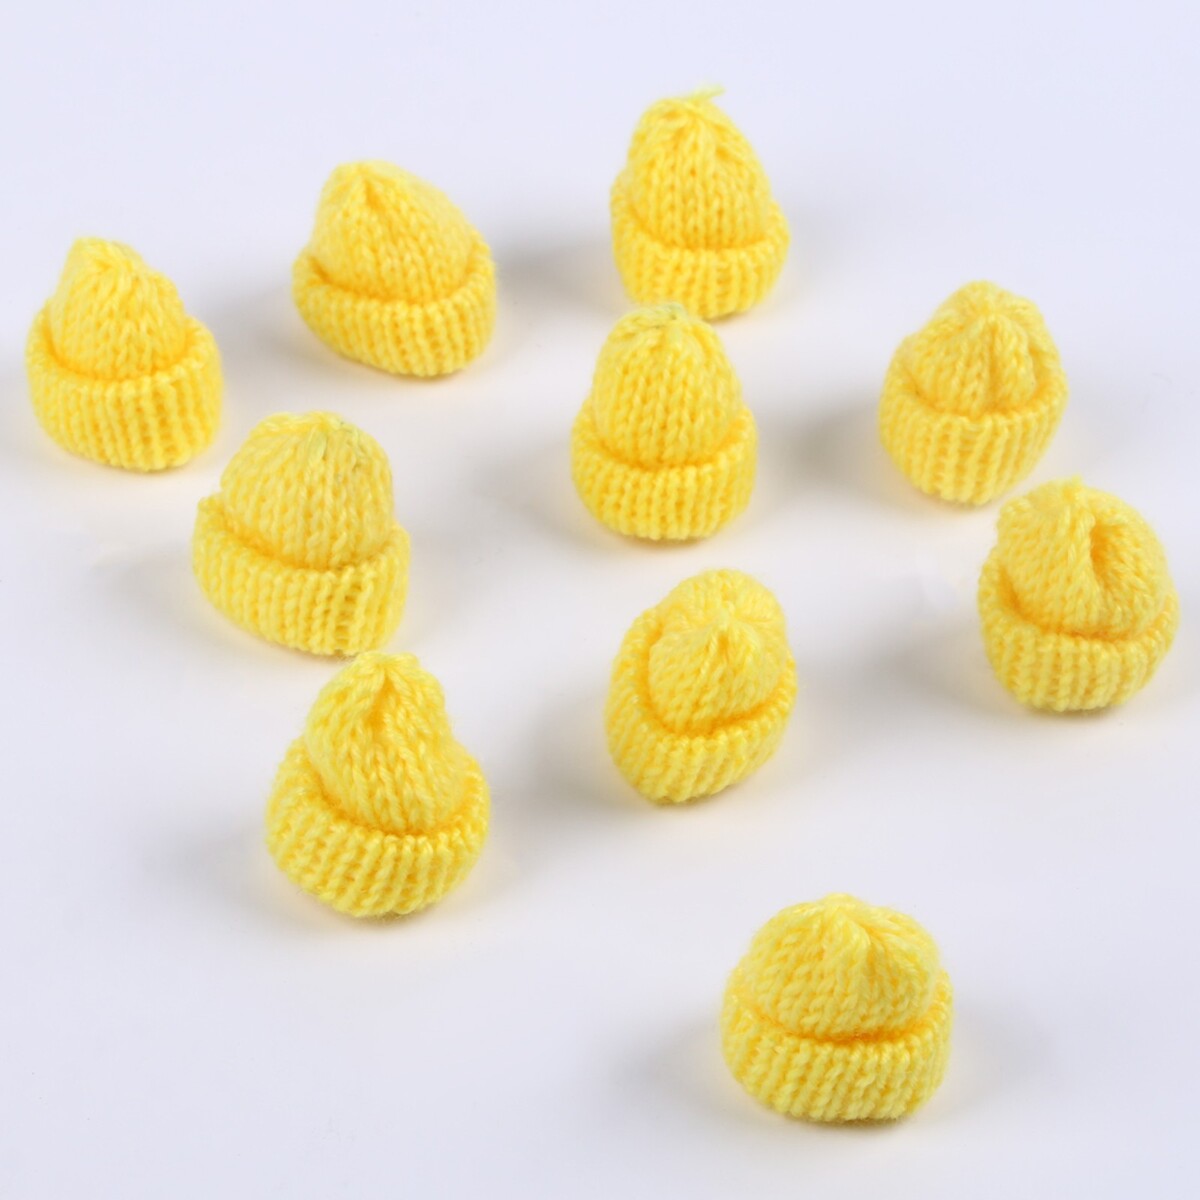 Шапка для игрушек вязаная, набор 10 шт., цвет желтый, размер 1 шт. — 3 × 4 см шапка вязаная